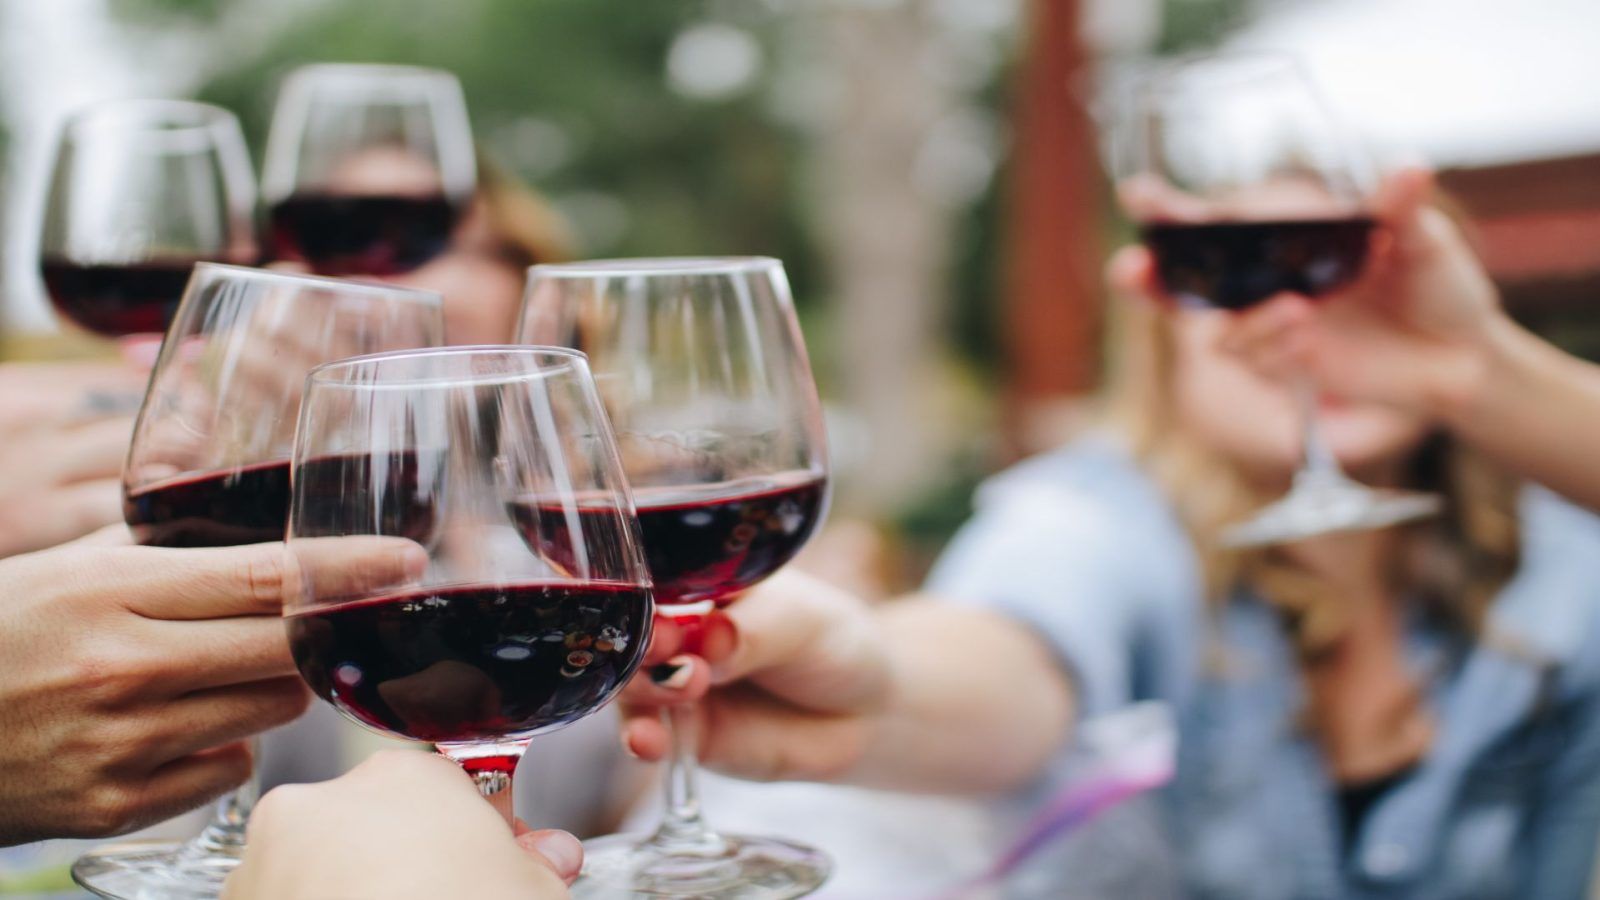 Riedel Vinum Wine Glasses Bordeaux - Meaningful Presents